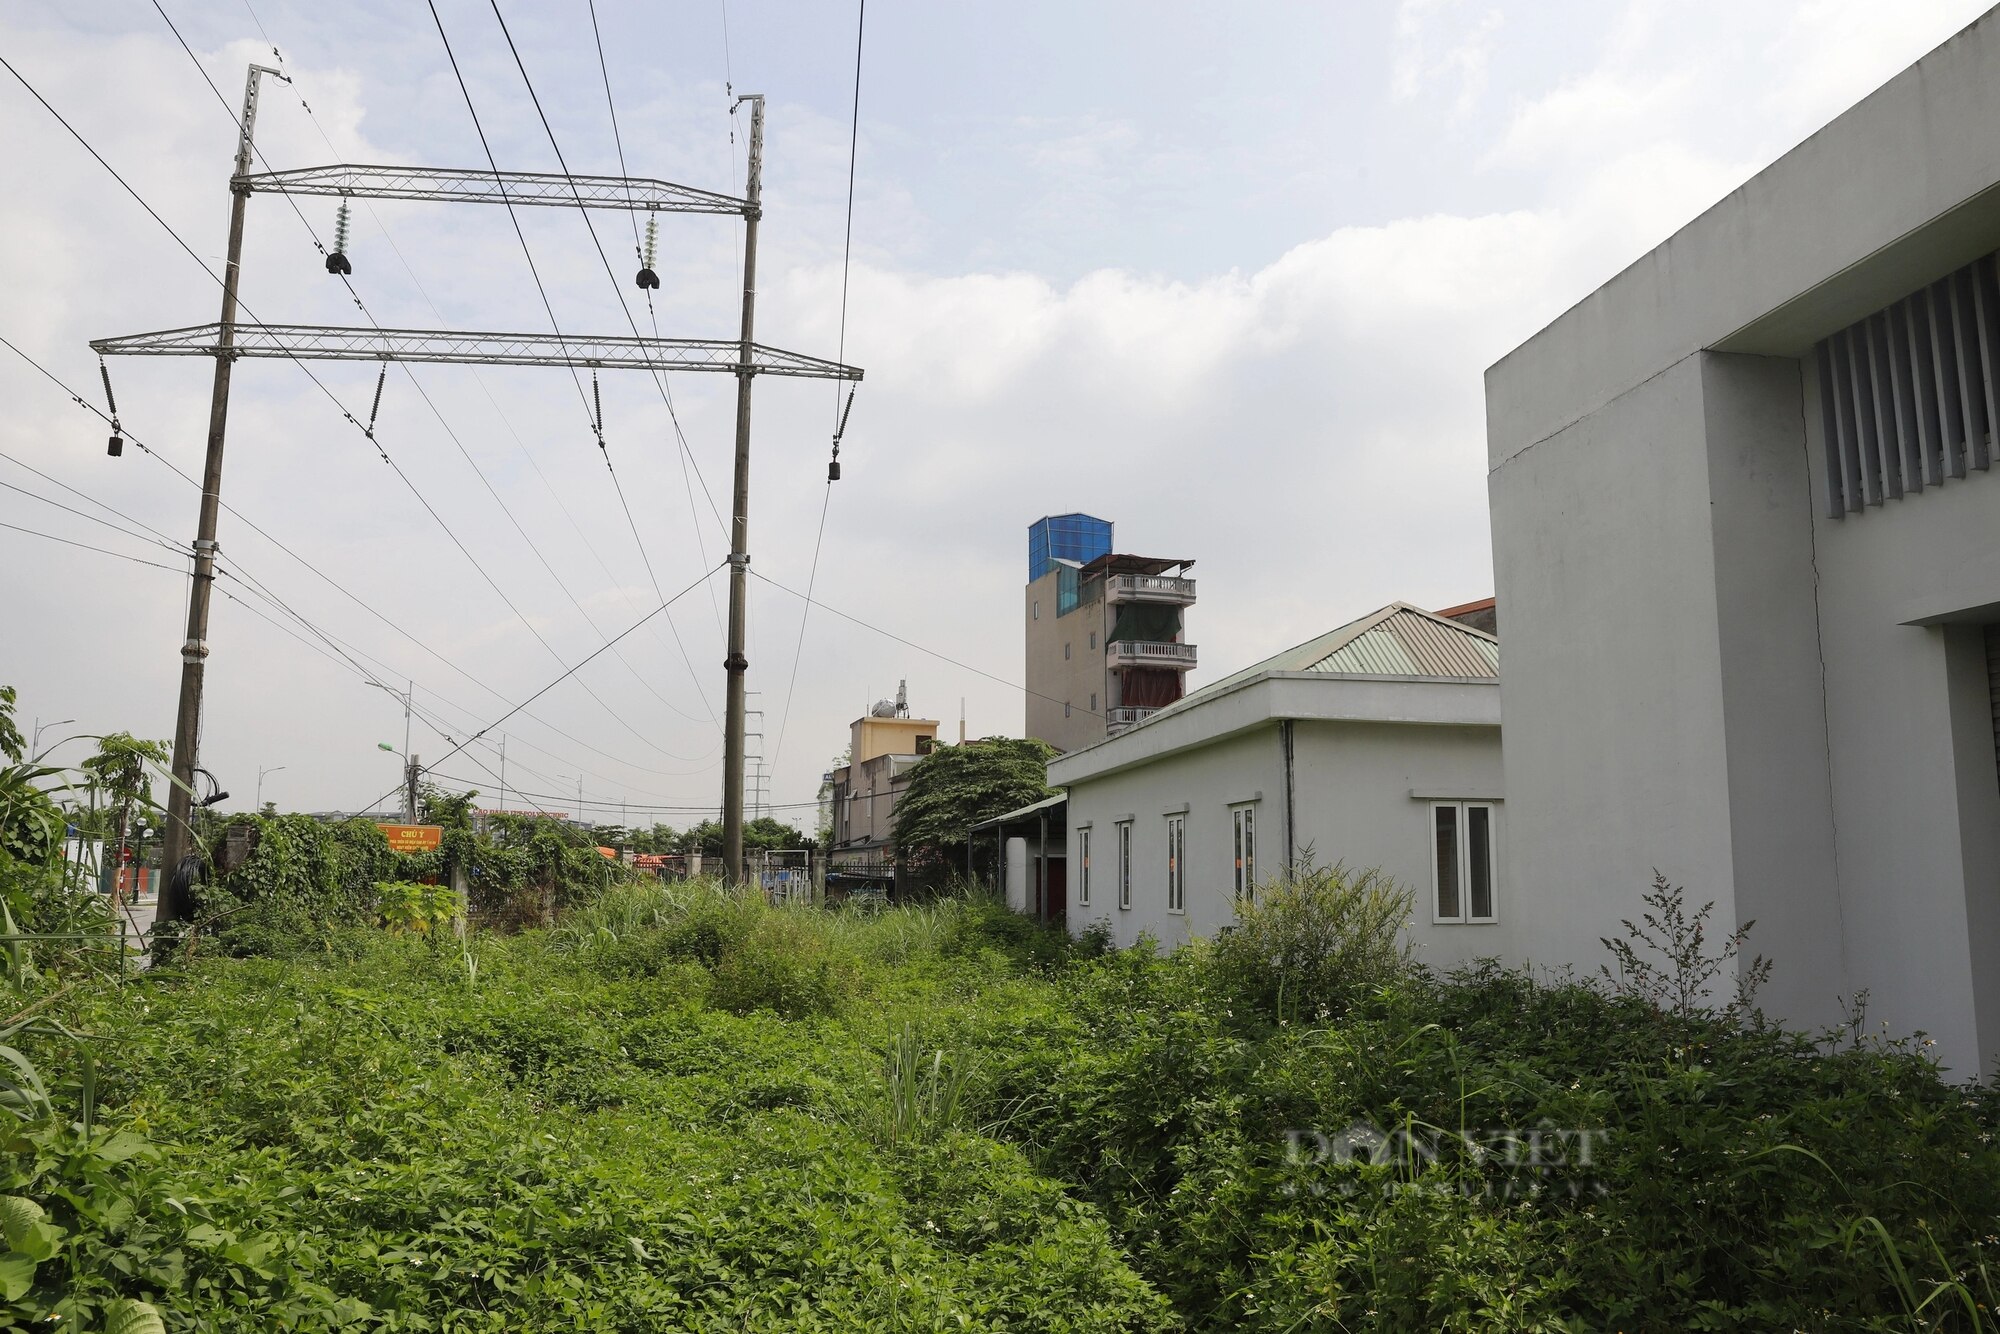 Bên trong chợ dân sinh ở Hà Nội bỏ hoang gần 10 năm, cỏ mọc um tùm quá đầu người- Ảnh 5.